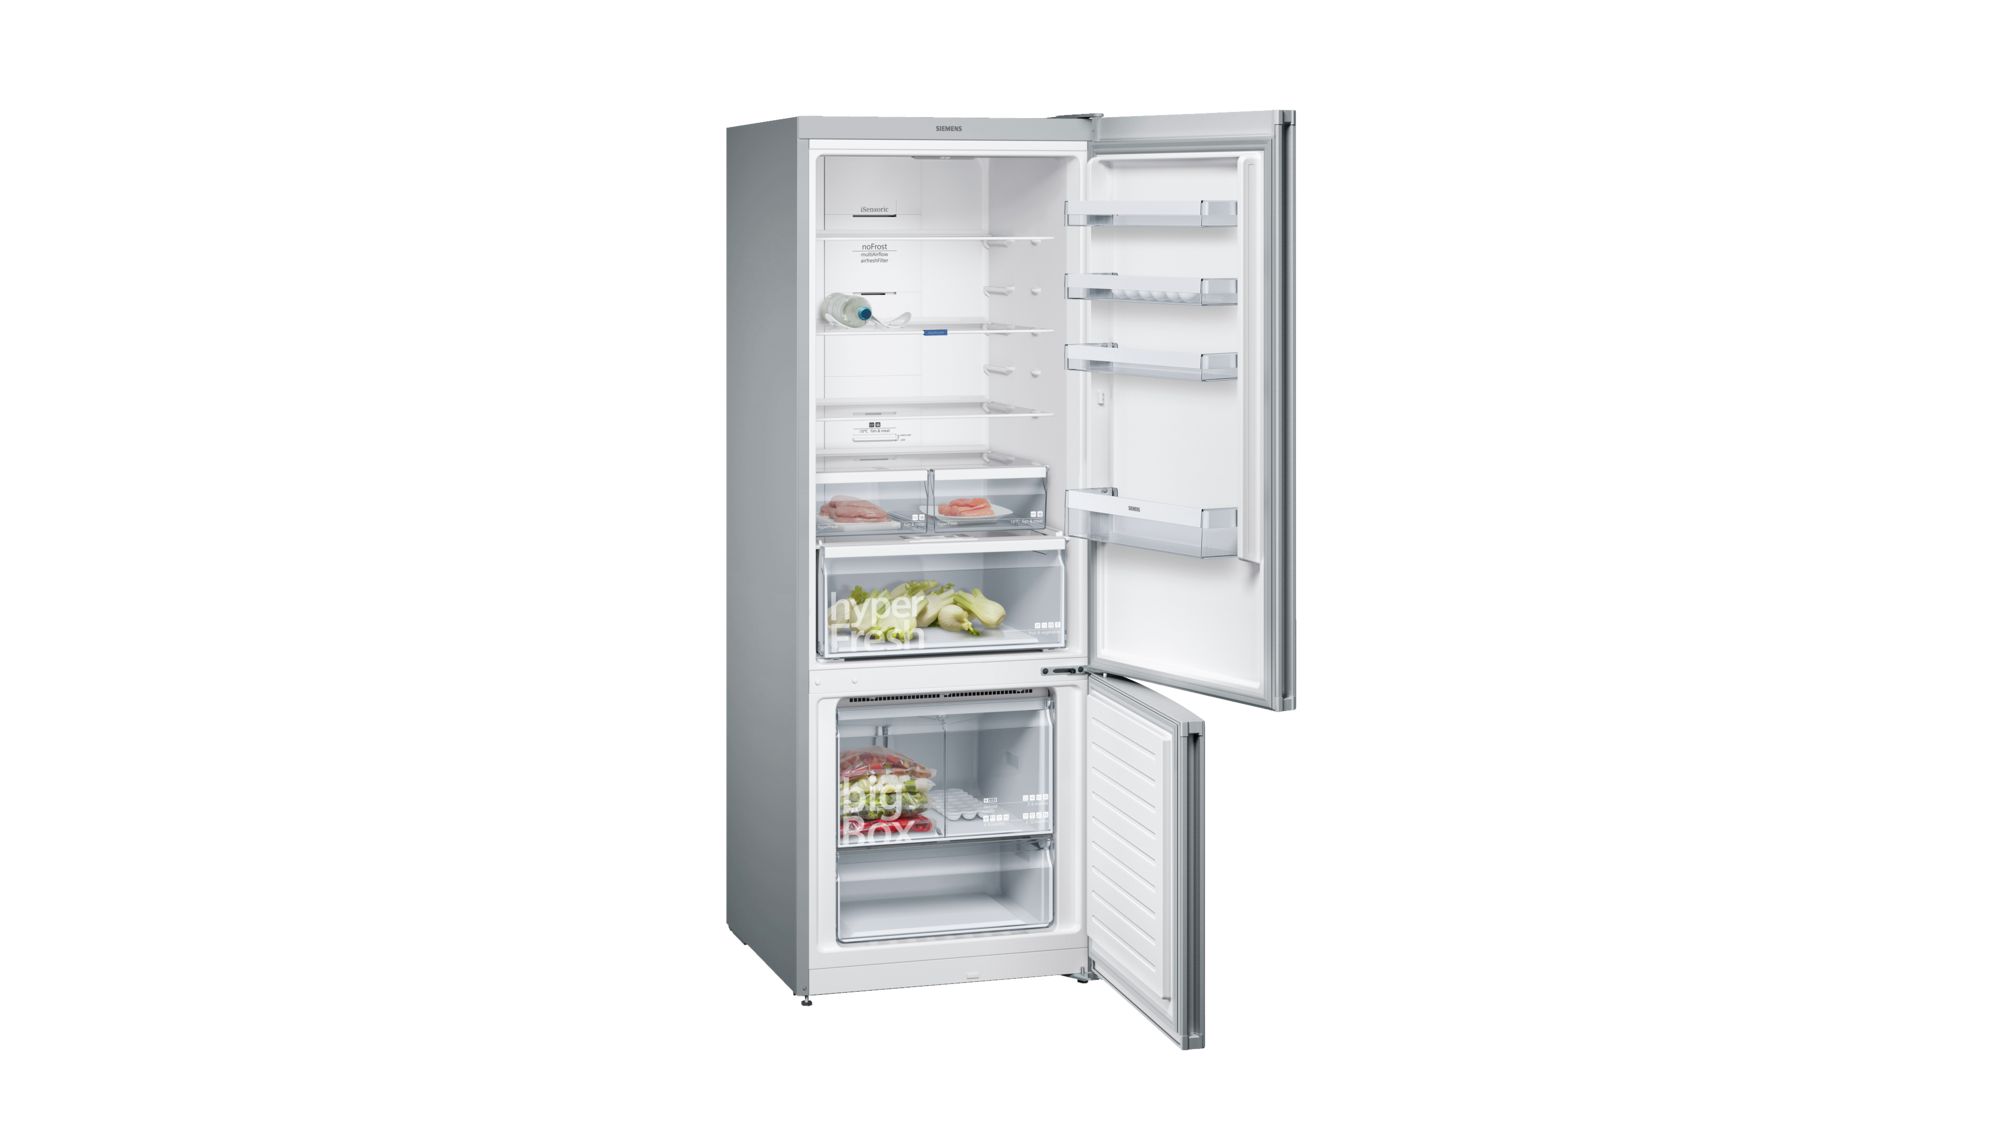 iQ300 Alttan Donduruculu Buzdolabı 70 cm, Kolay temizlenebilir Inox